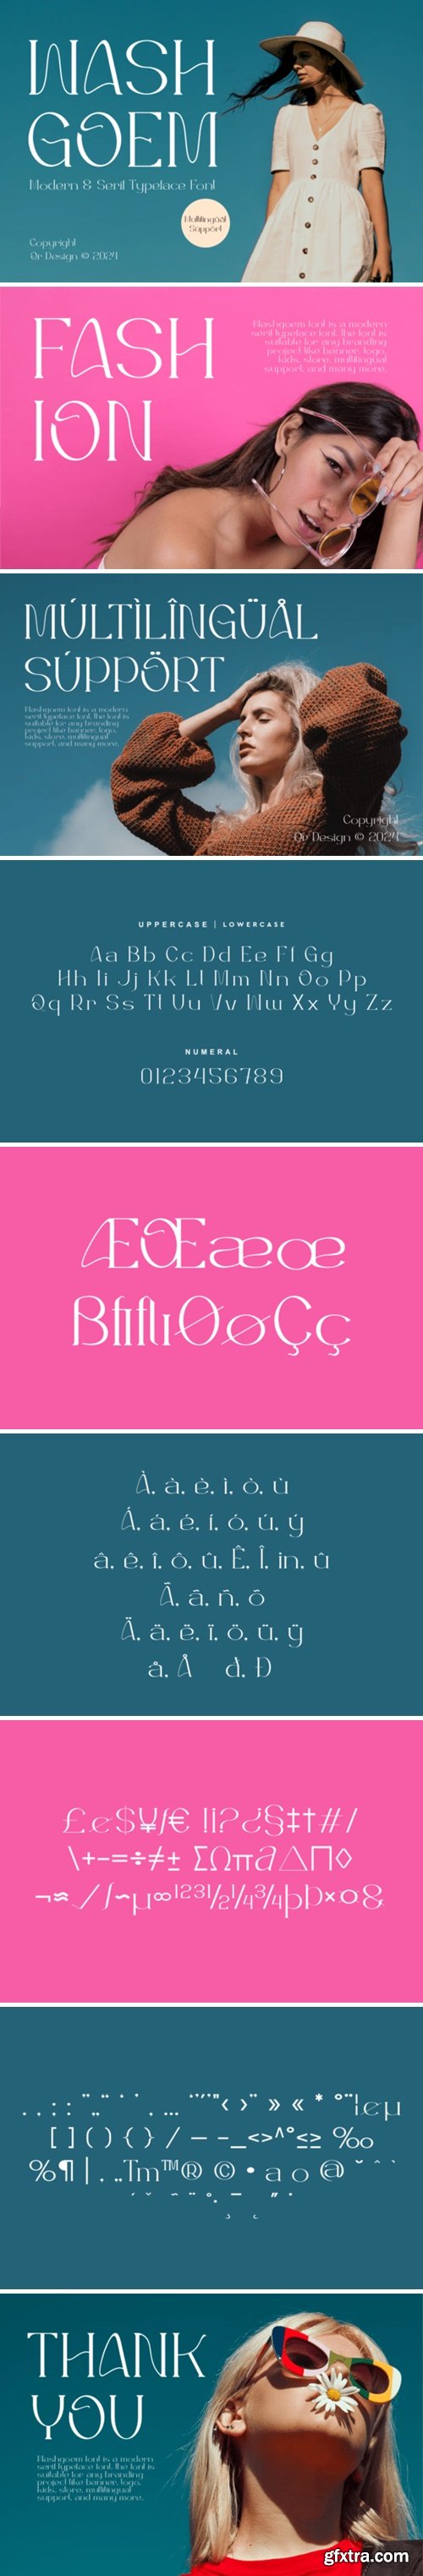 CM - Washgoem - Modern & Serif Typeface 92515012